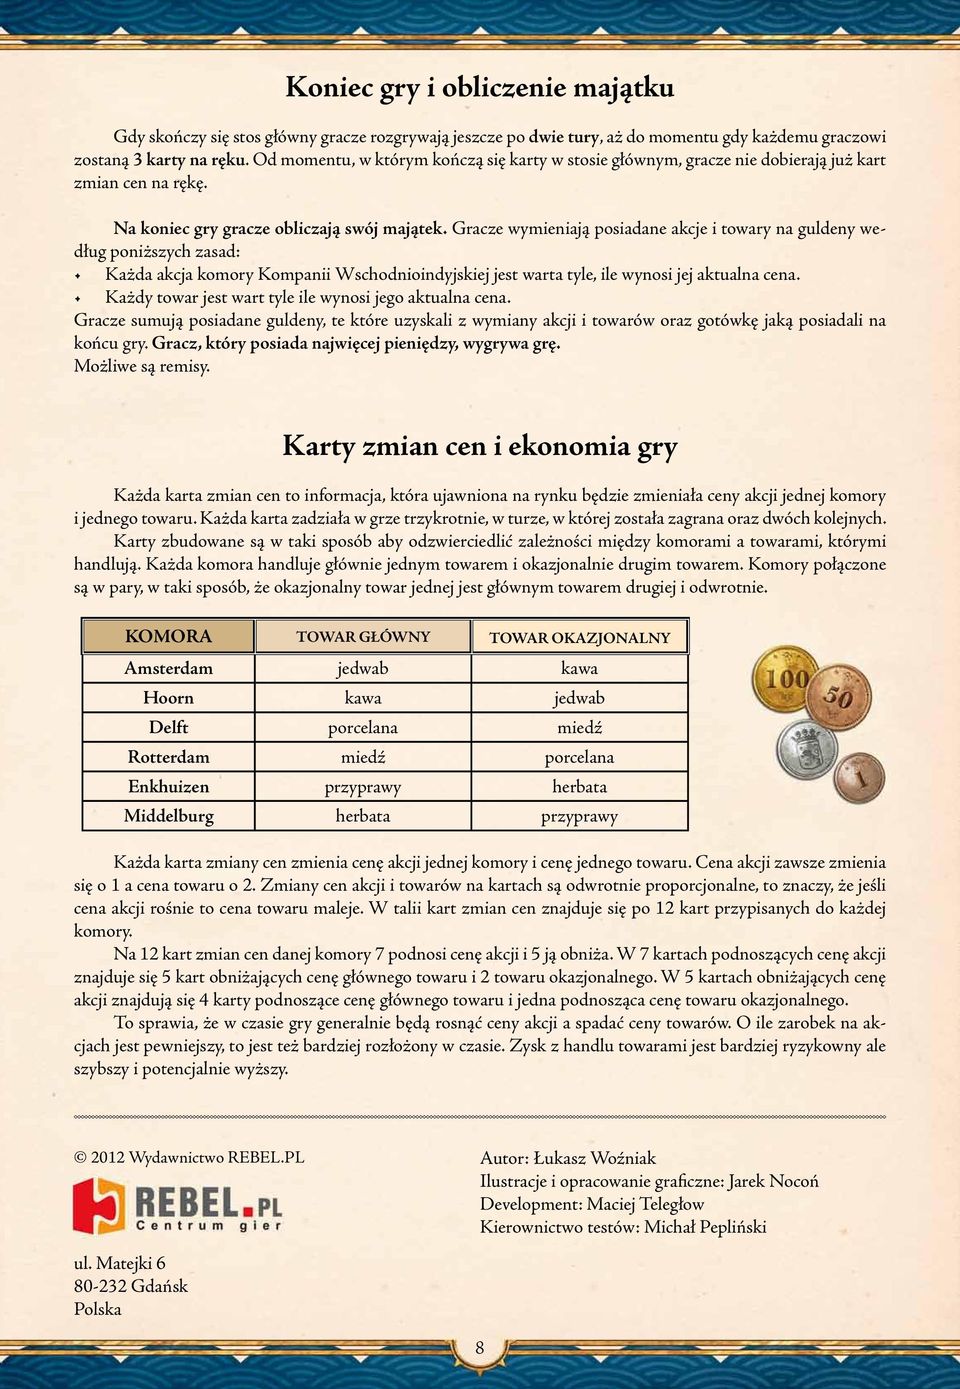 Gracze wymieniają posiadane akcje i towary na guldeny według poniższych zasad: Każda akcja komory Kompanii Wschodnioindyjskiej jest warta tyle, ile wynosi jej aktualna cena.